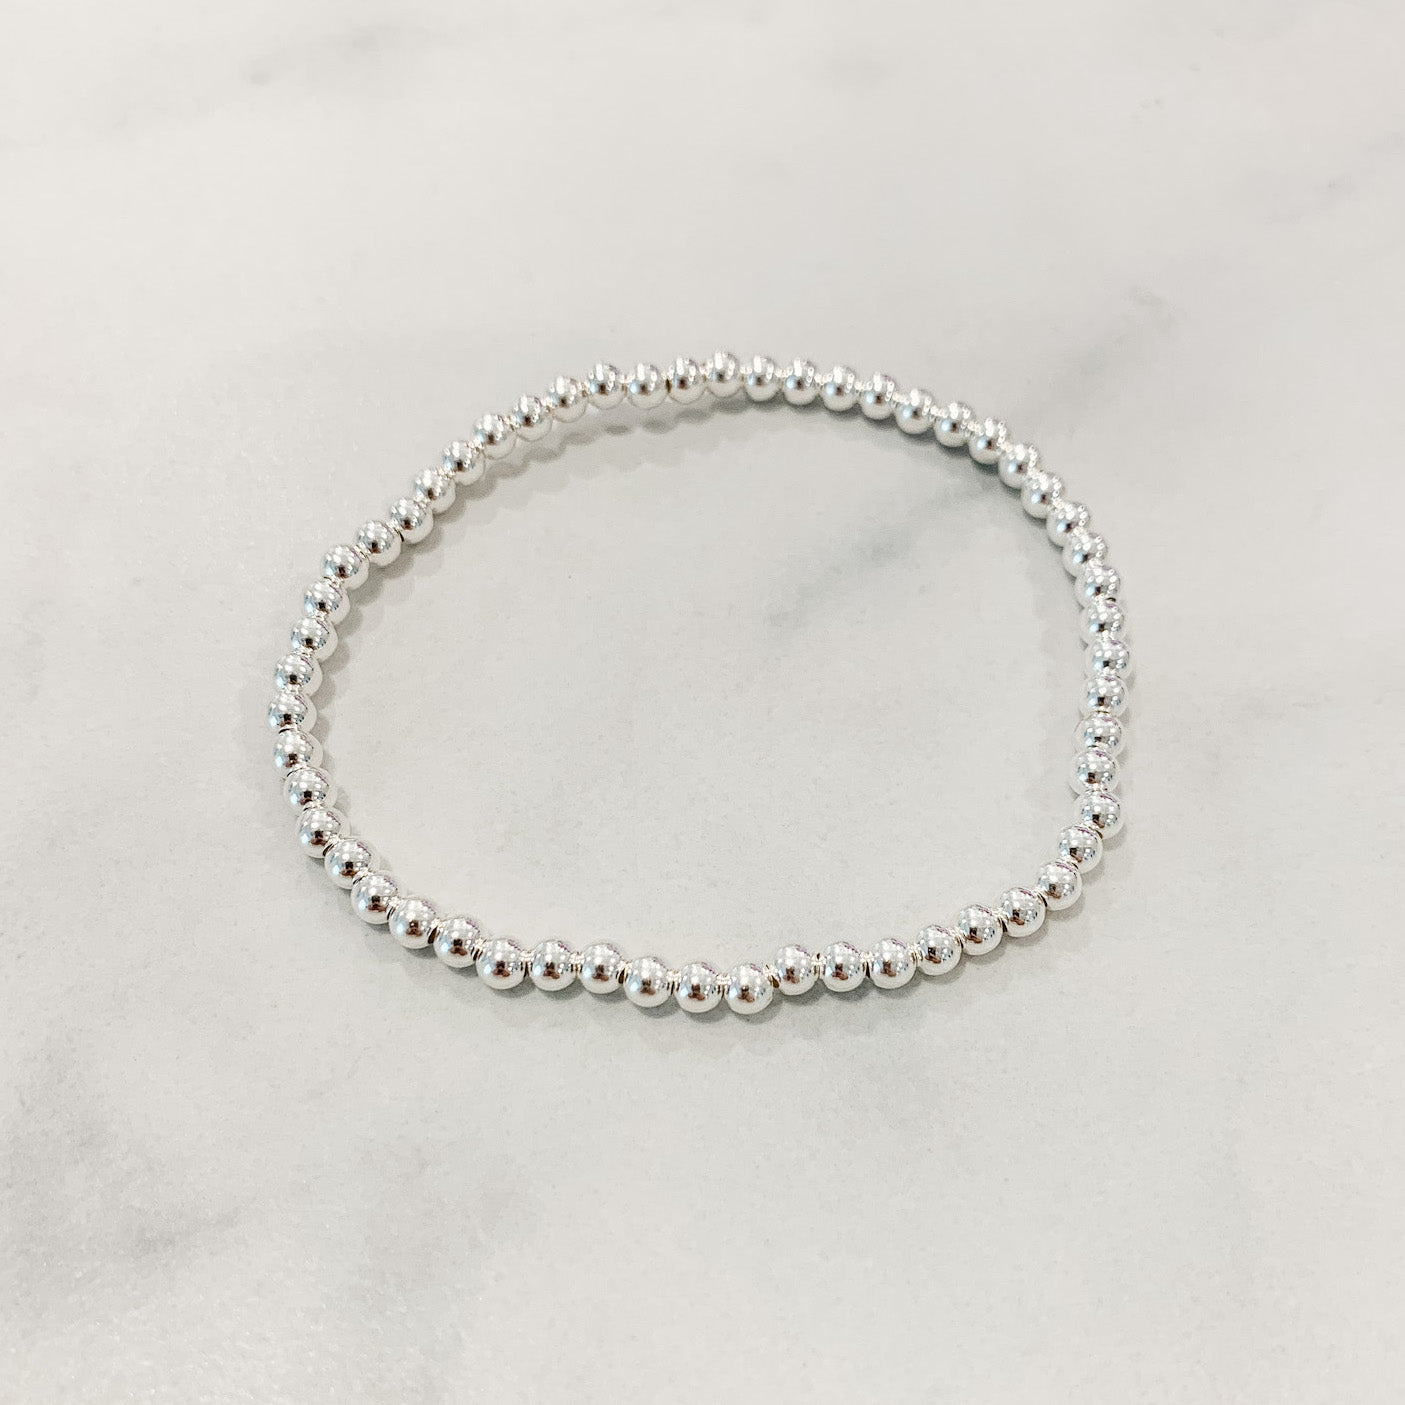 Children's Classic Silver Beaded Bracelet